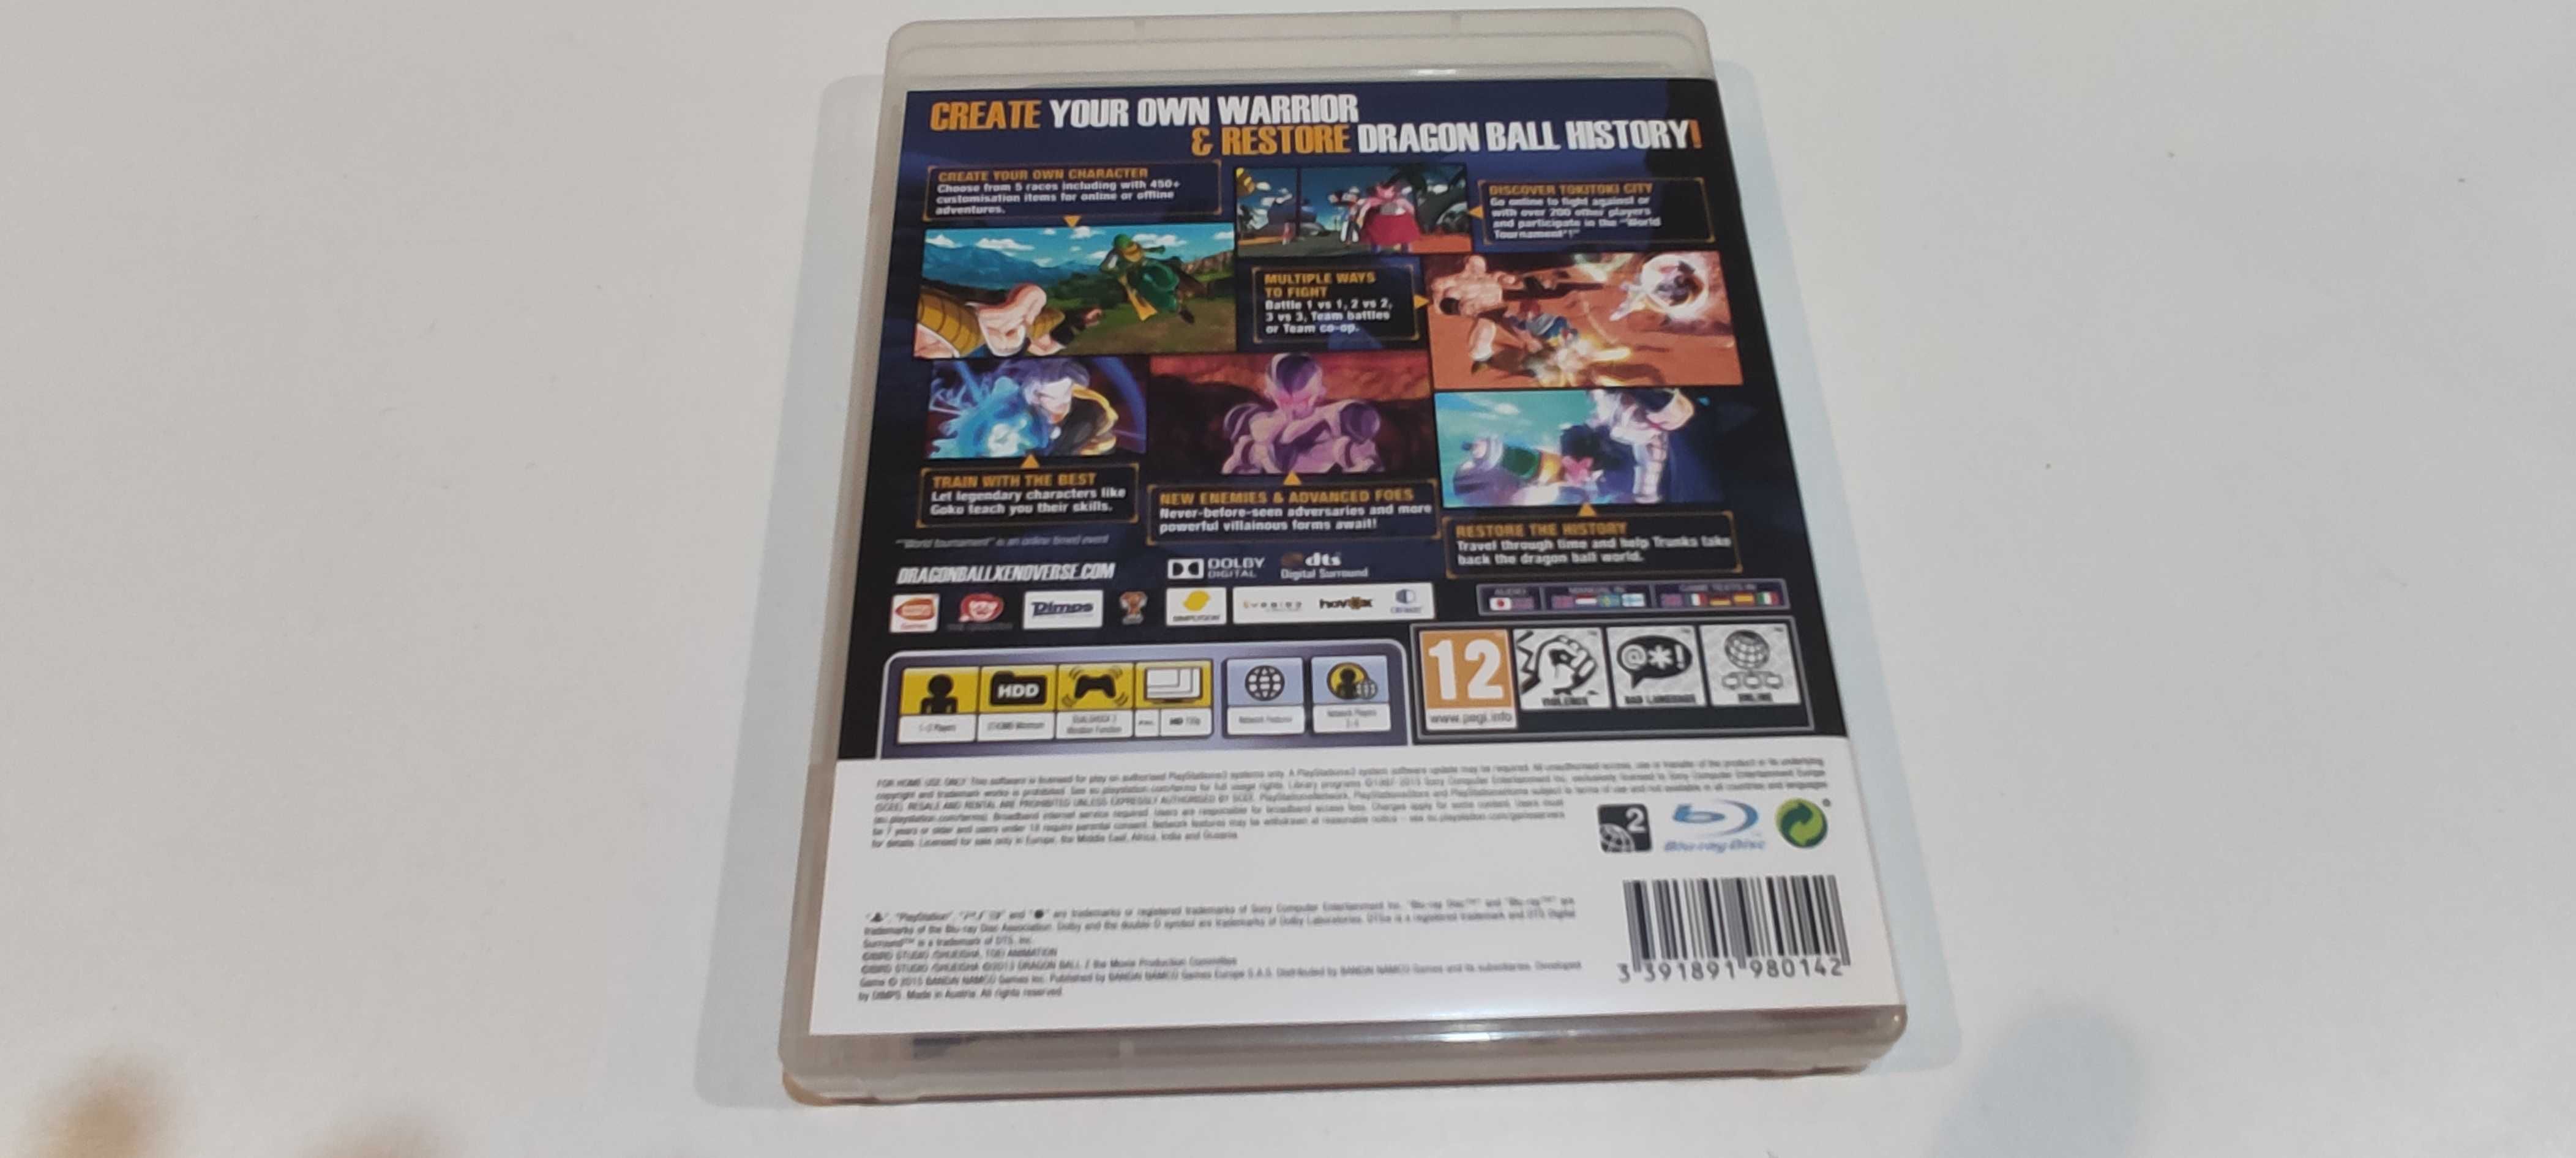 Gra Dragonball Xenoverse XV PS3 PlayStation 3